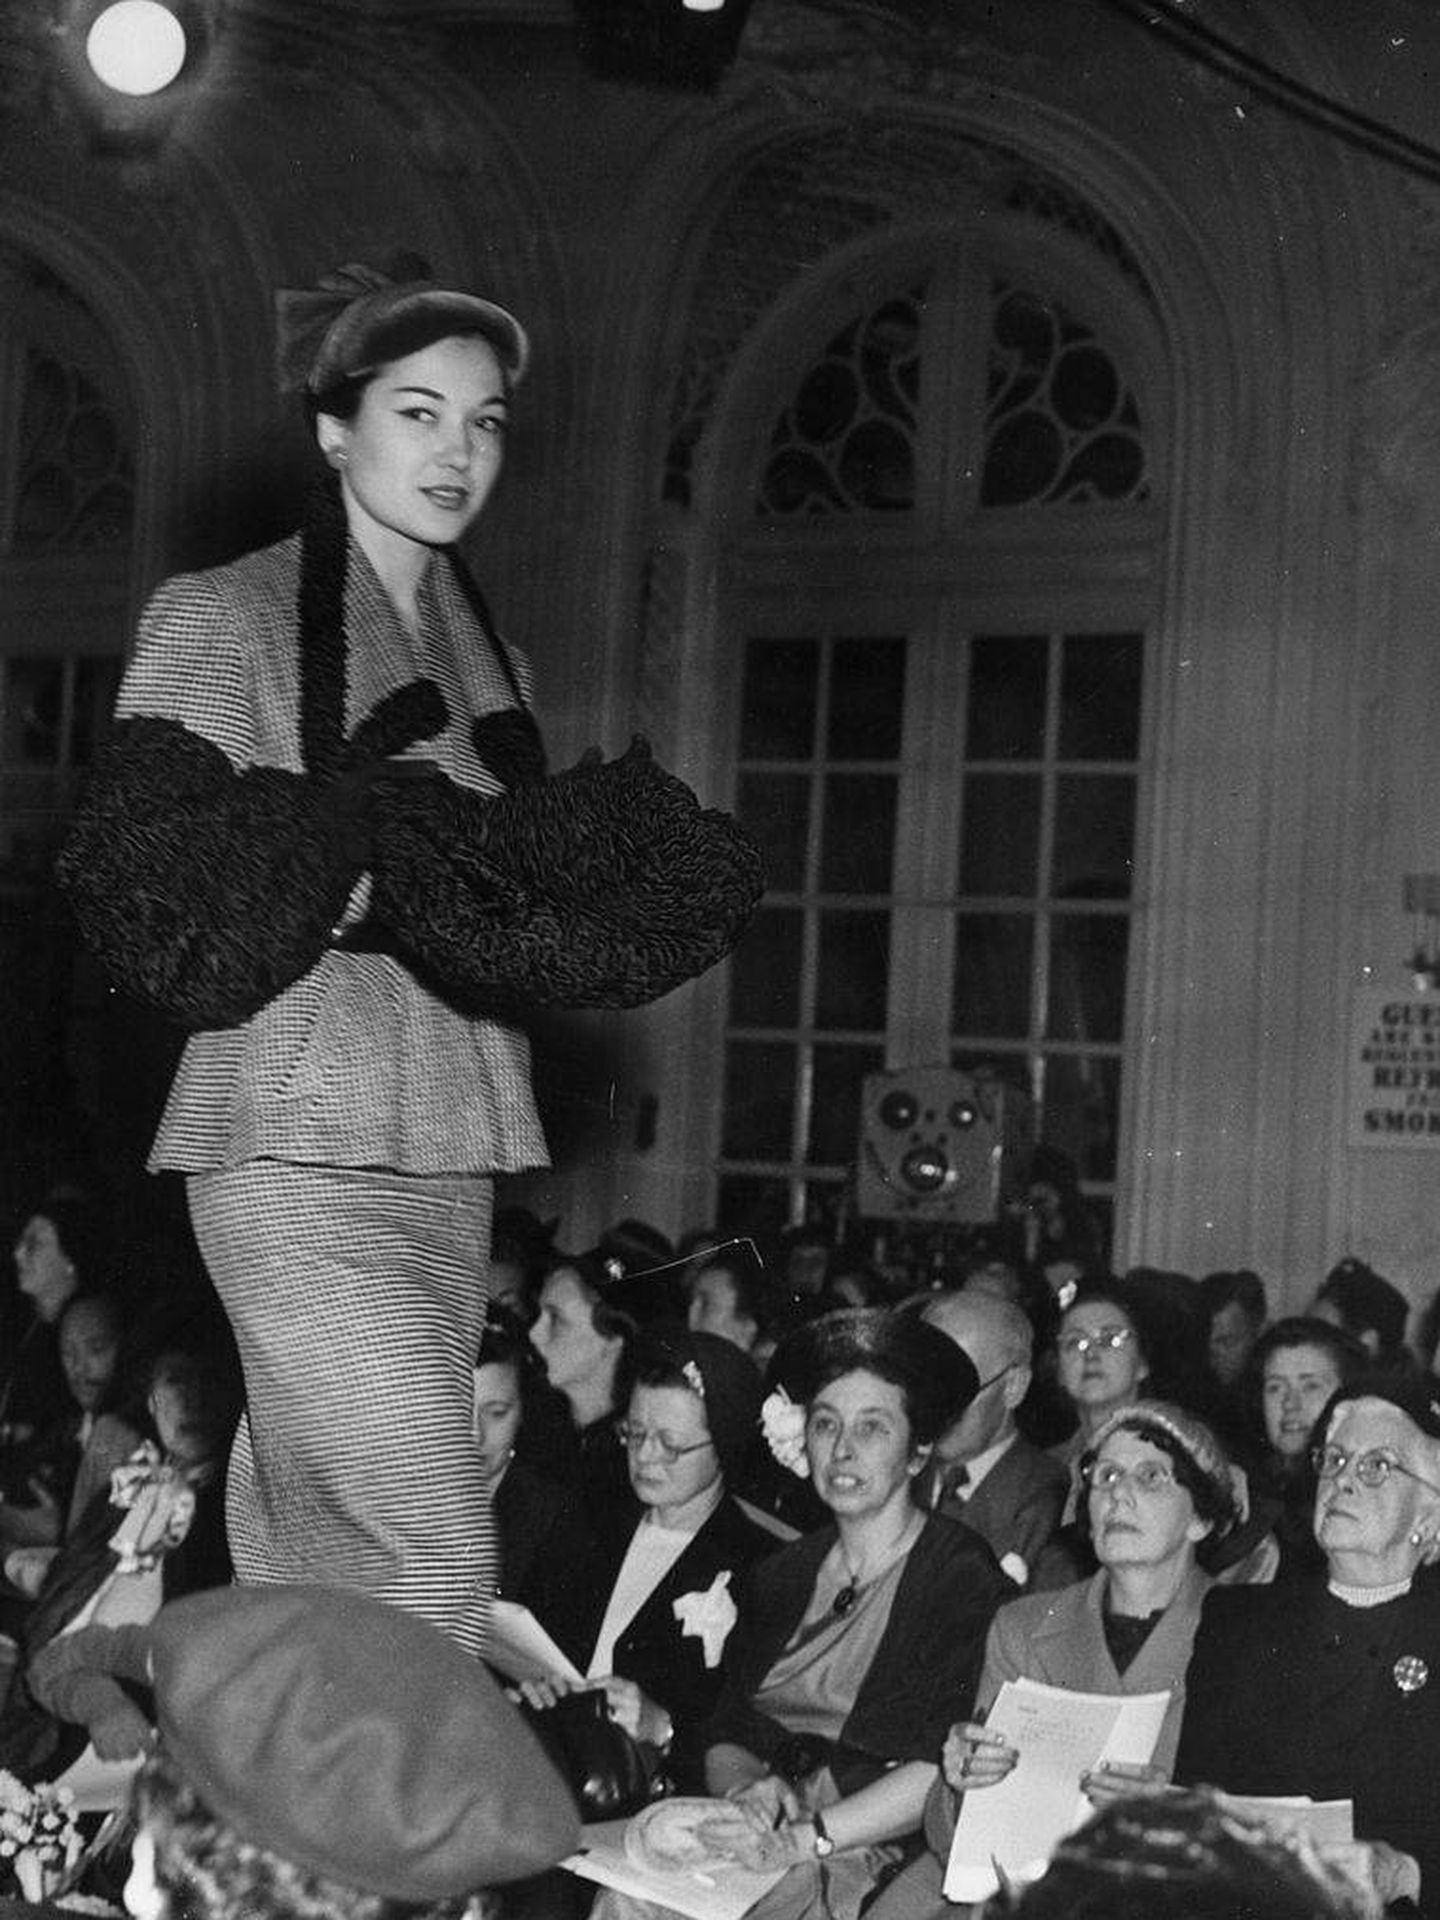 1951 Wool Fashions. (Getty)